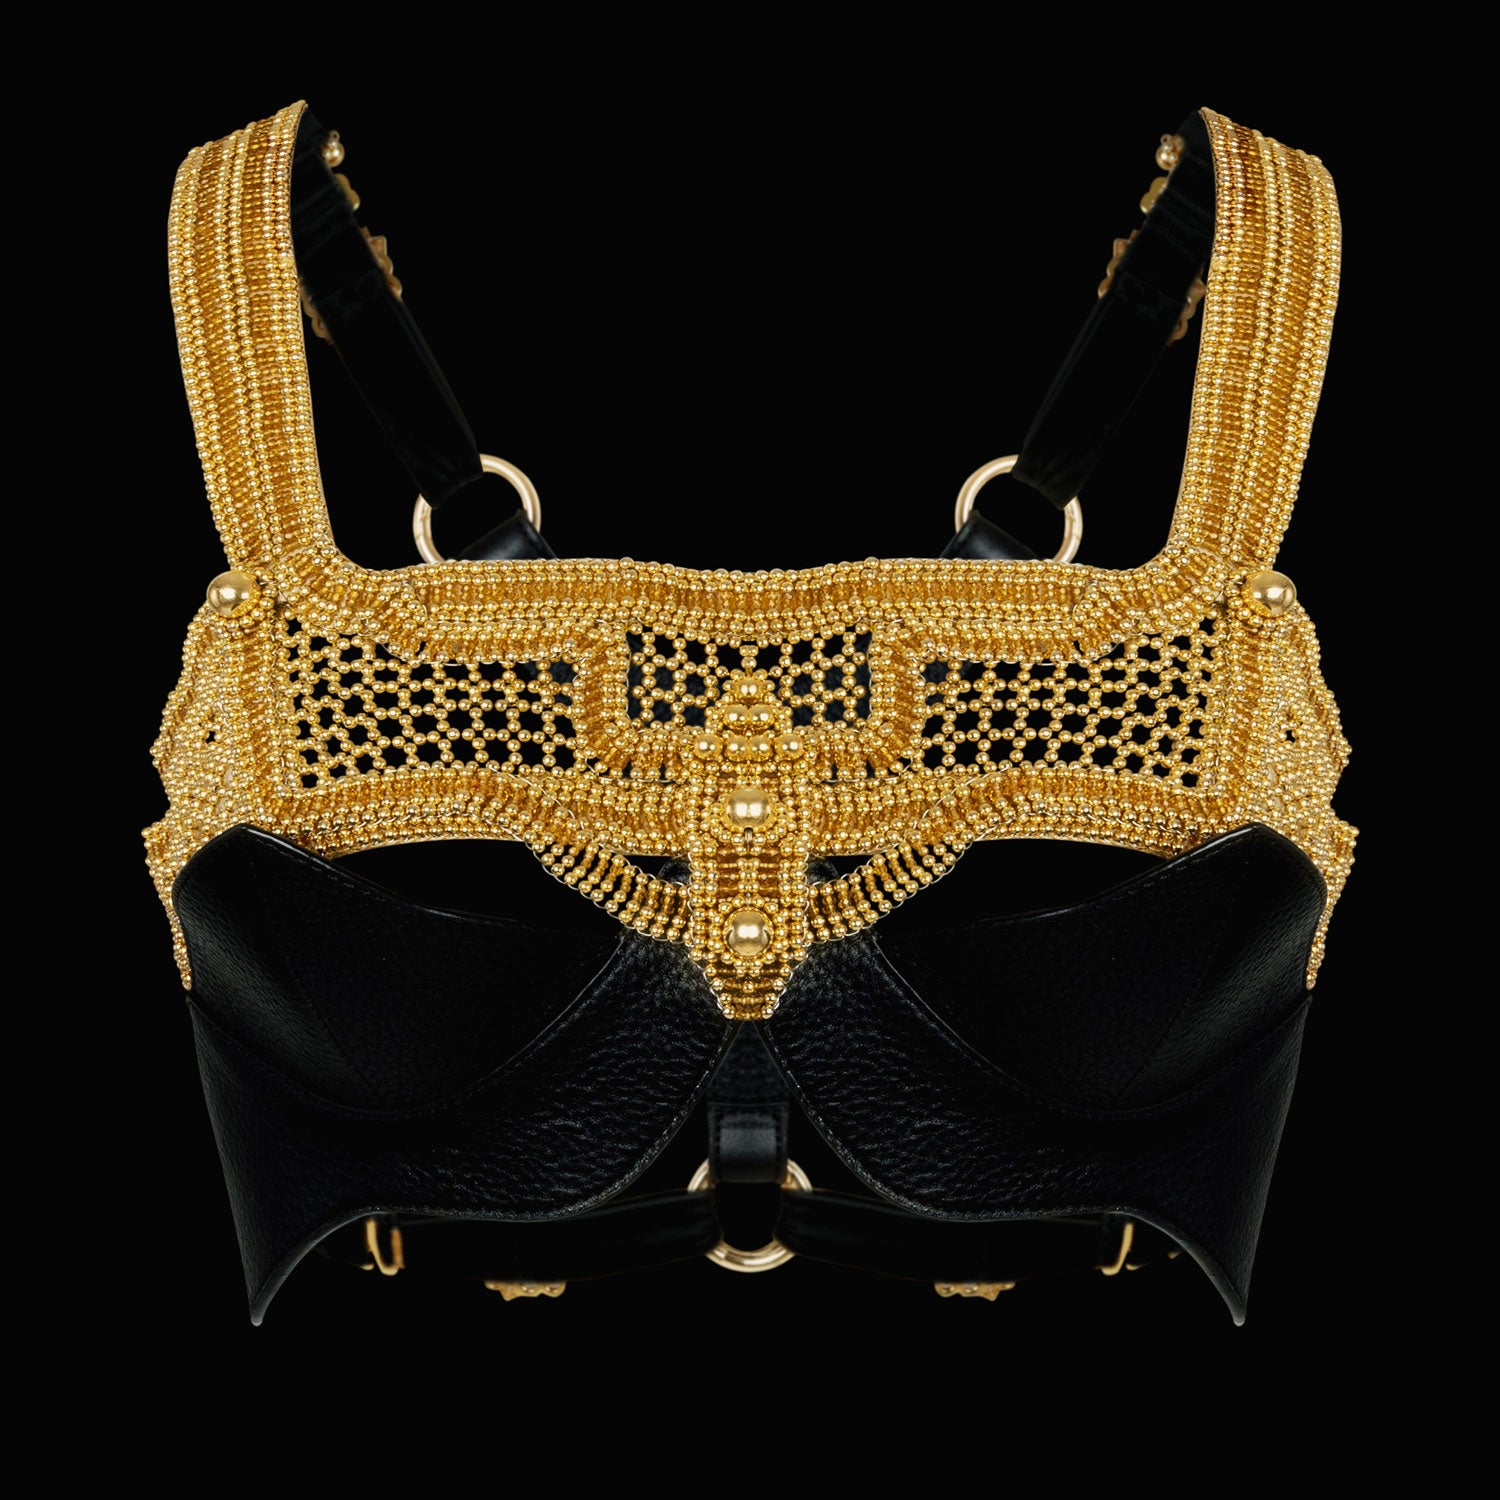 Khutulun Modular Top in Gold w/ Black Leather Bra